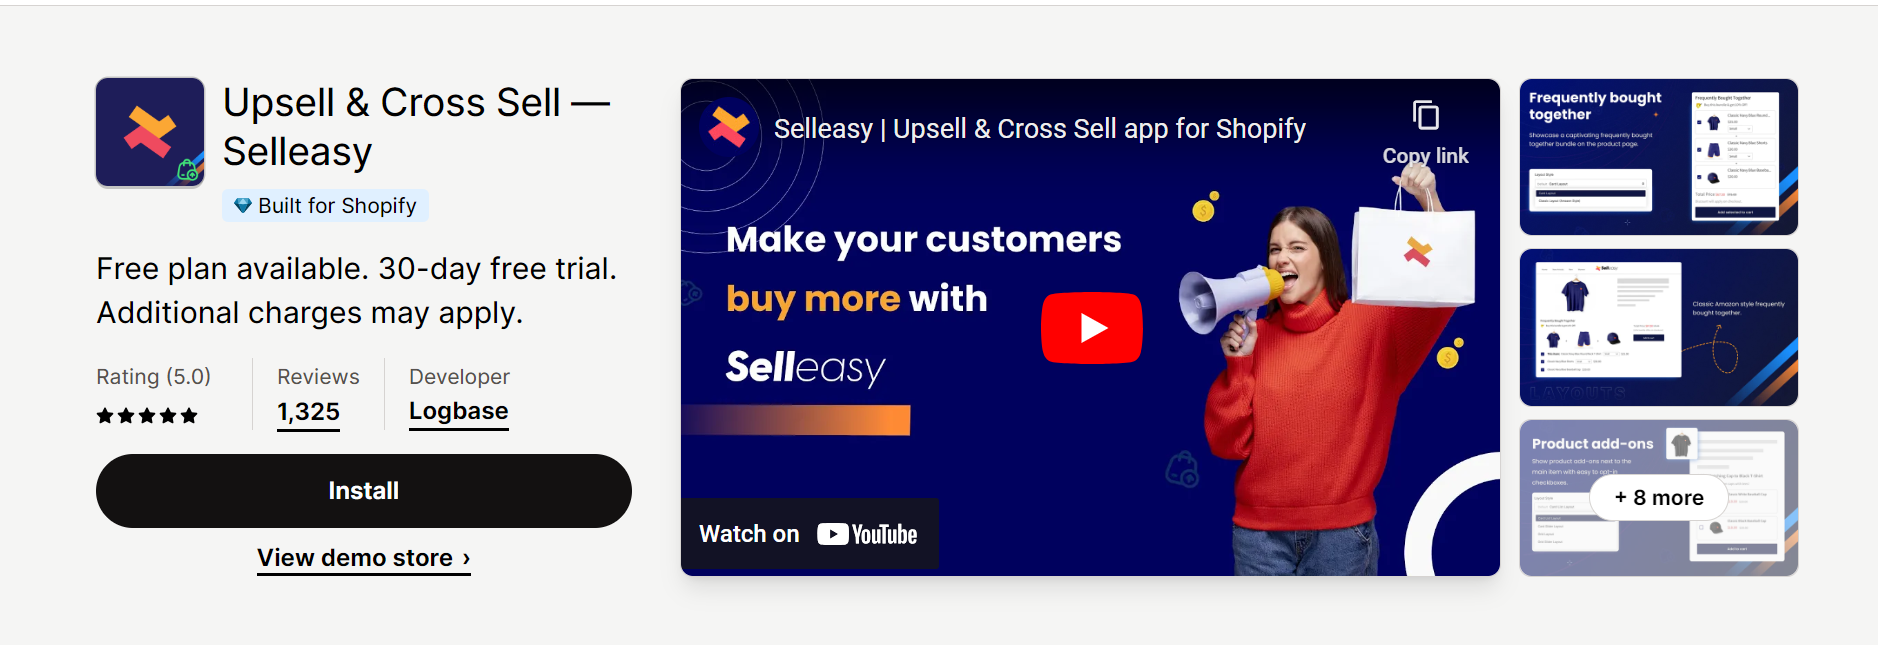 Upsell & Cross Sell — Selleasy